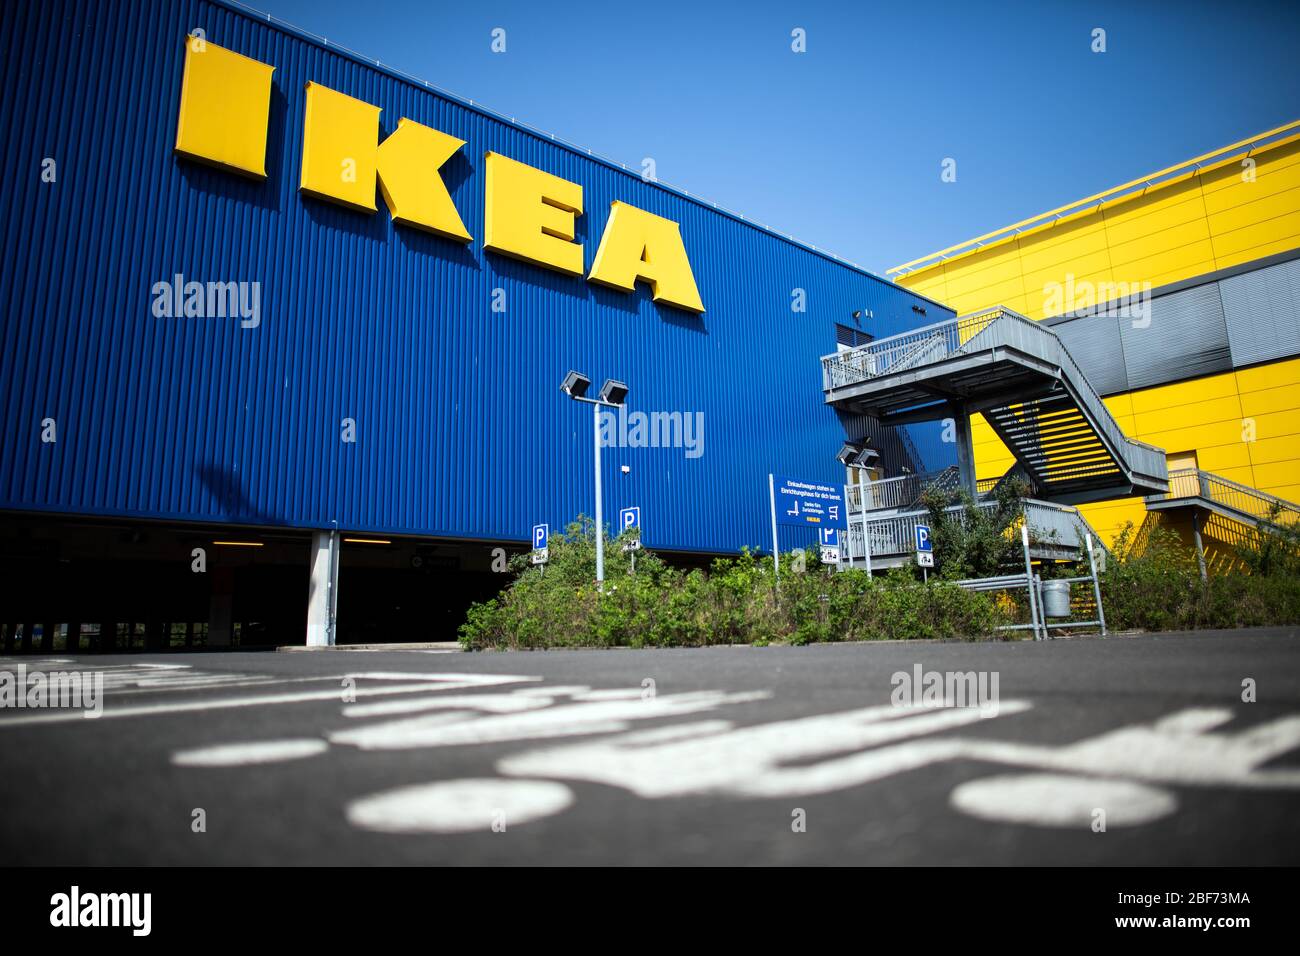 Colonia, Alemania. 17 de abril de 2020. Los pictogramas en el suelo apuntan  a los espacios de estacionamiento familiares en una tienda de muebles Ikea.  El gigante del mobiliario Ikea podrá reabrir